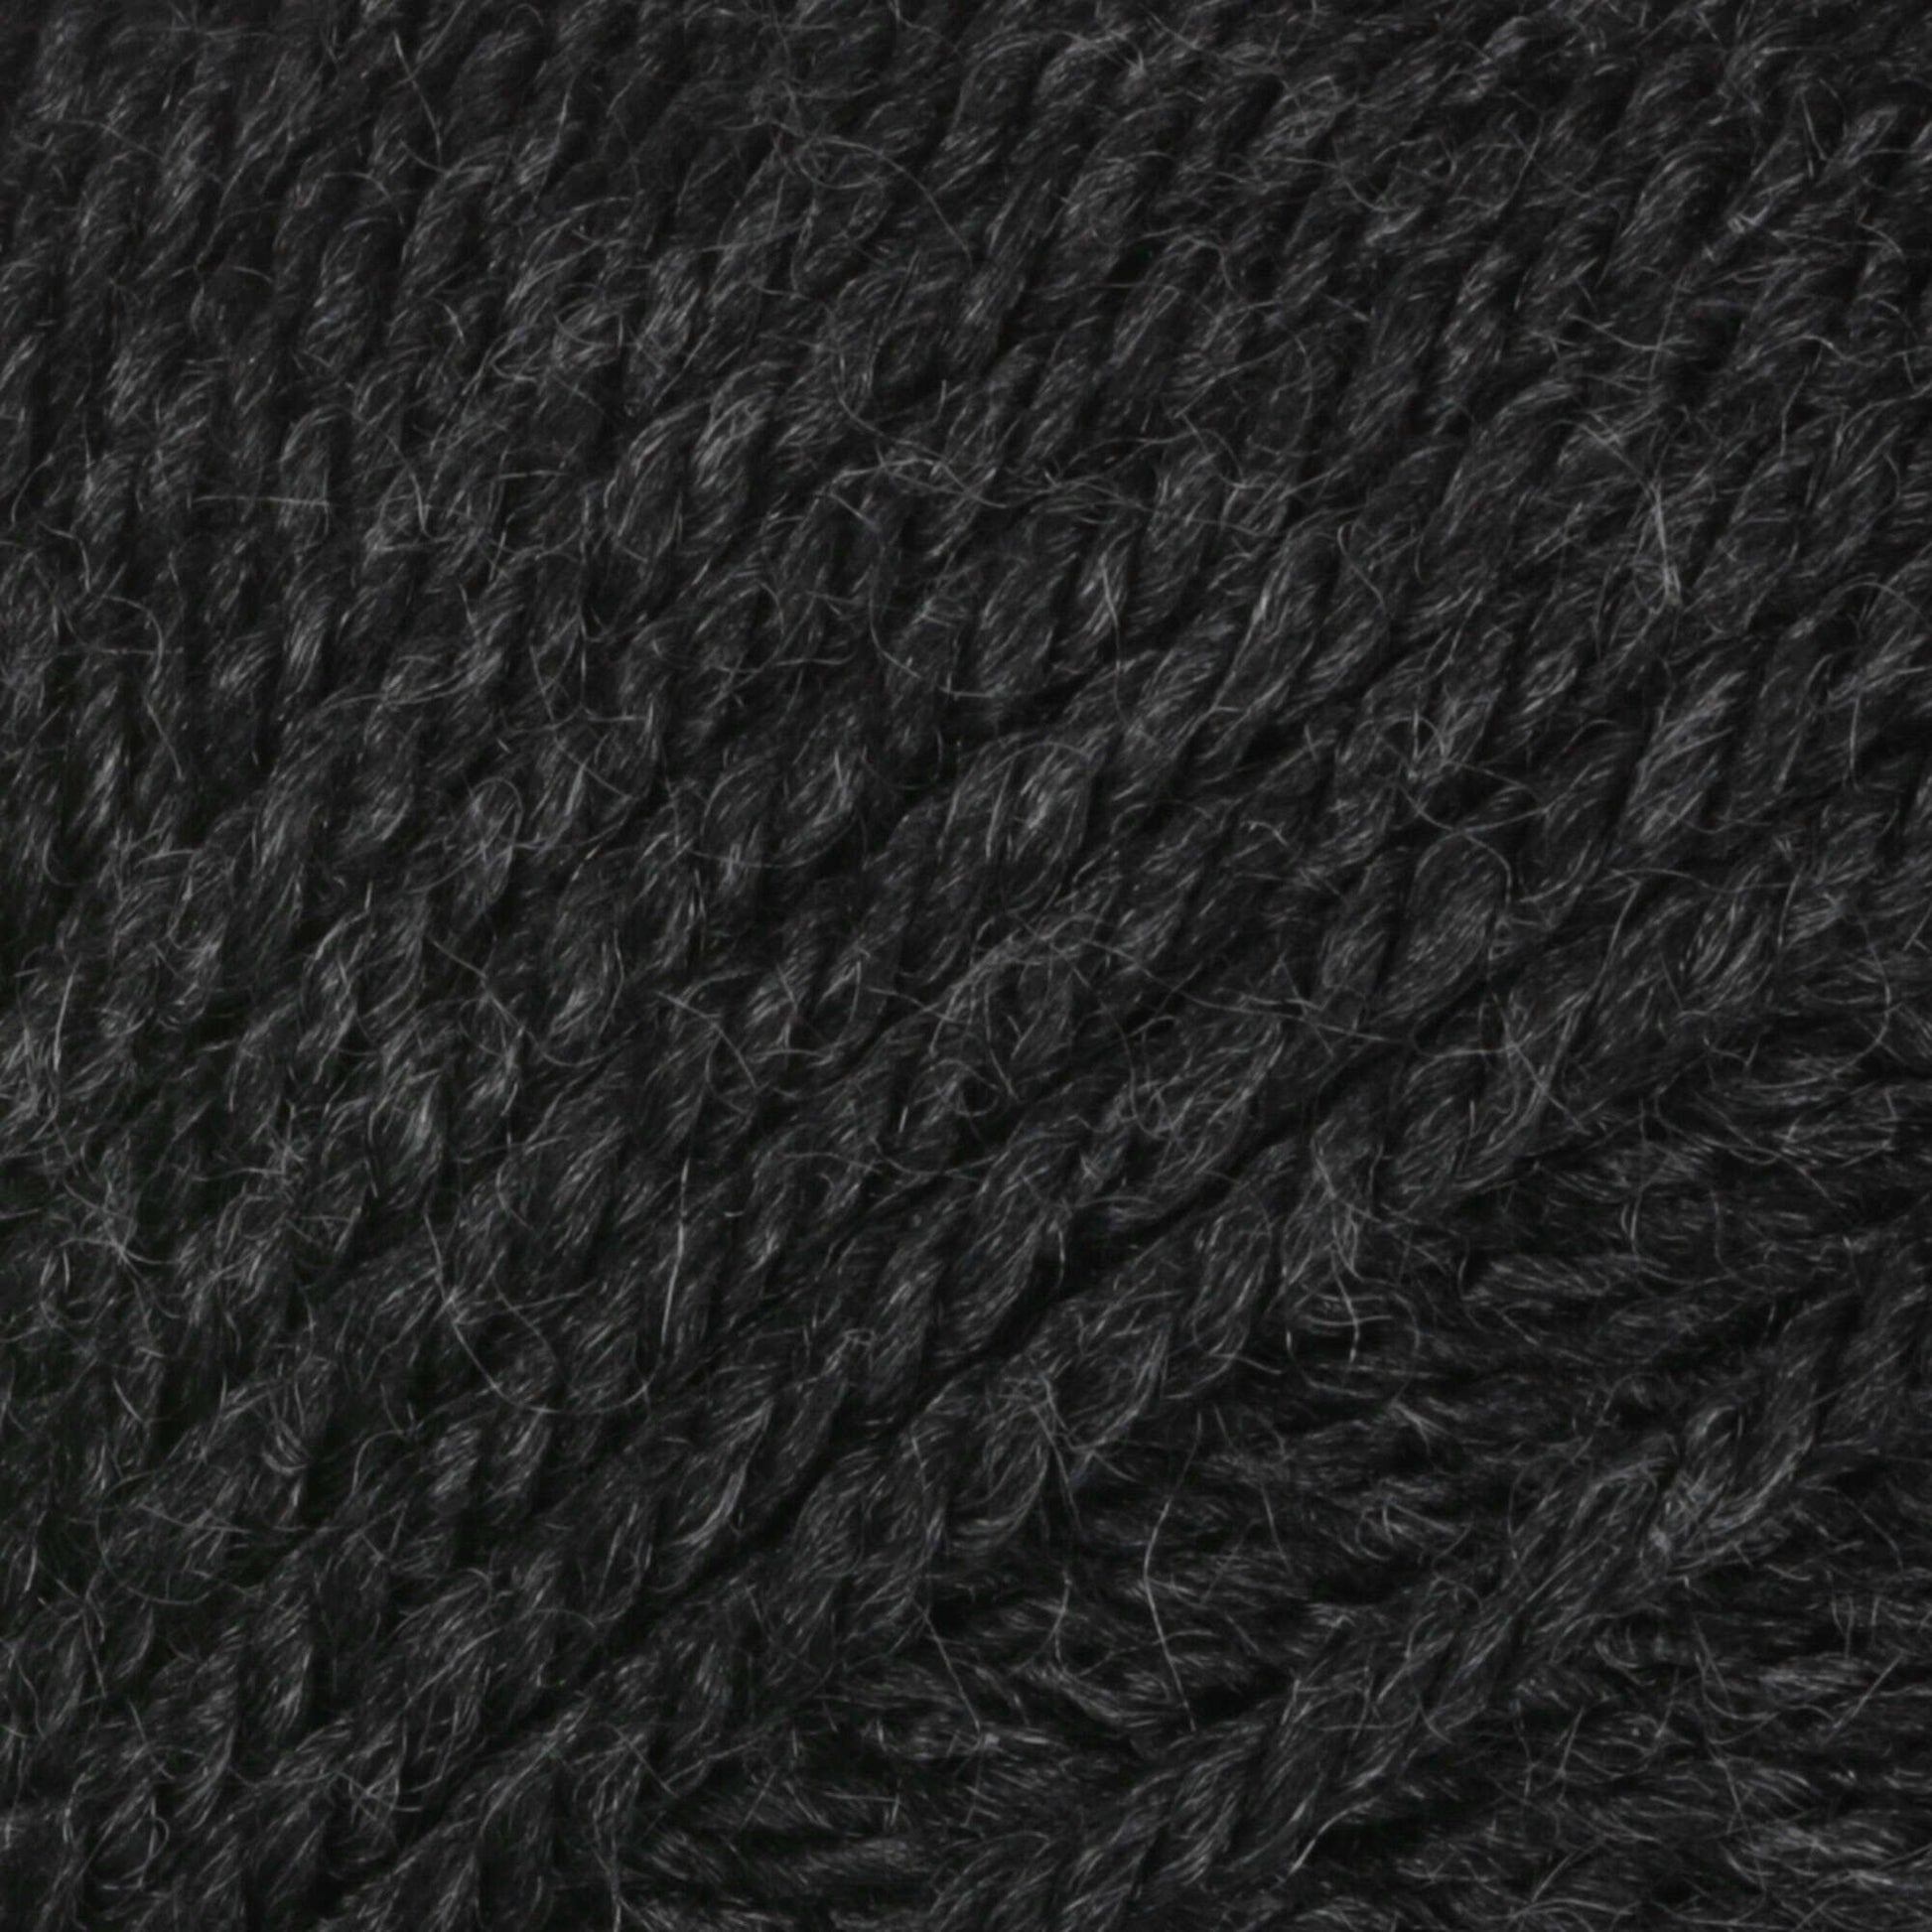 Patons Canadiana Yarn Dark Gray Mix